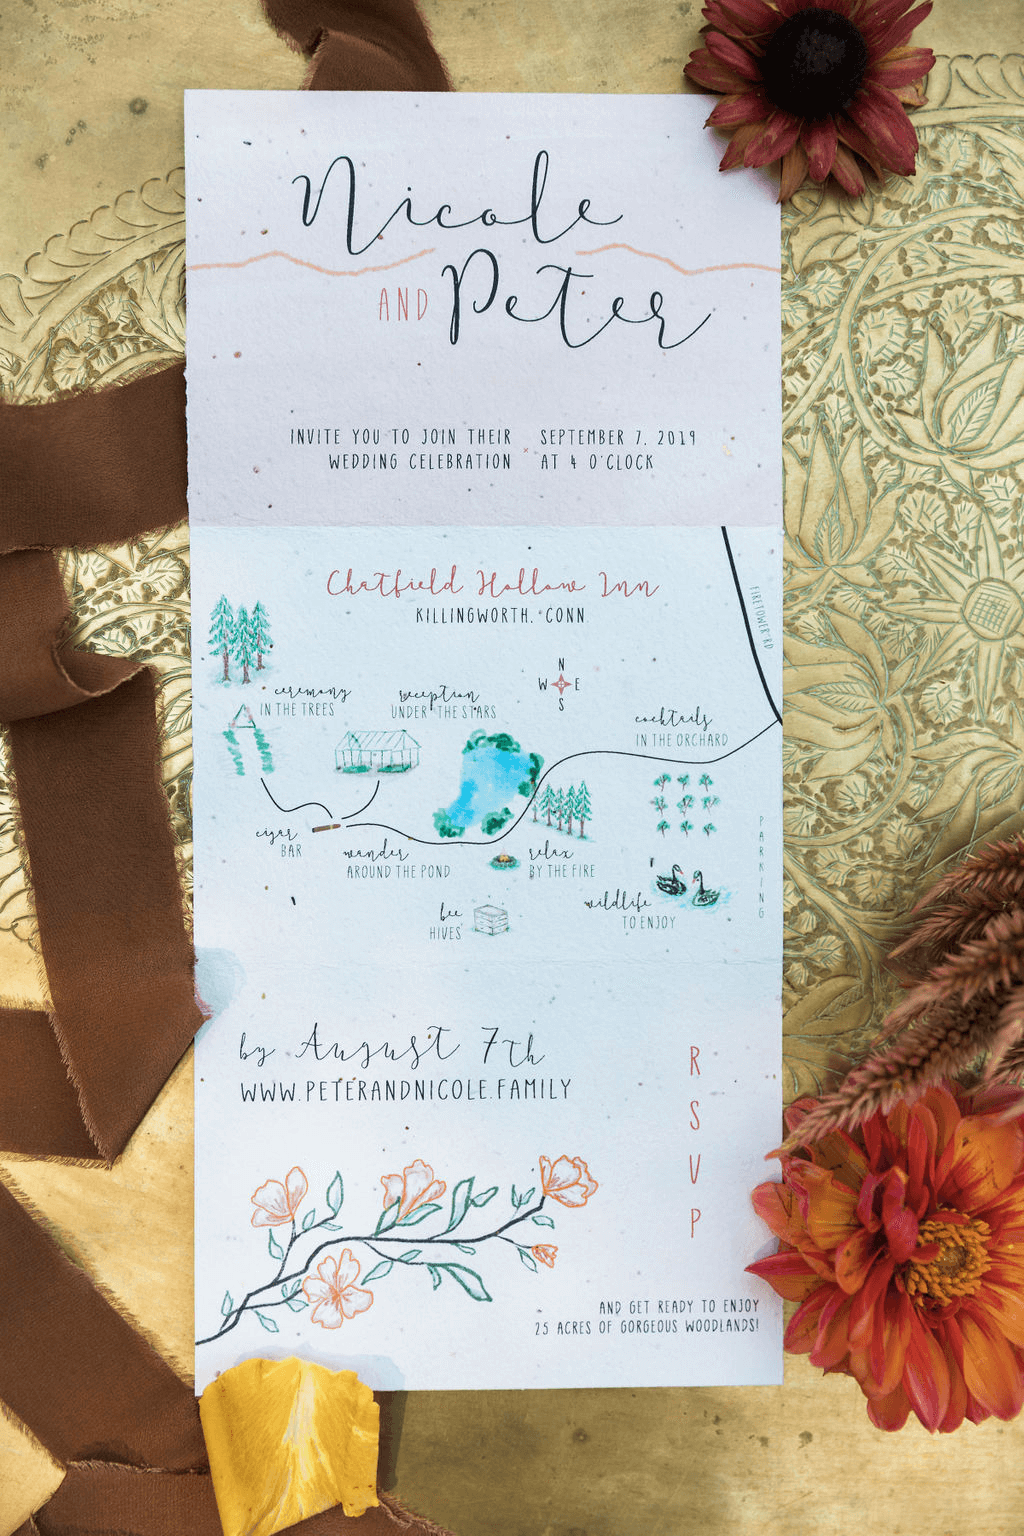 A three folded wedding invitation